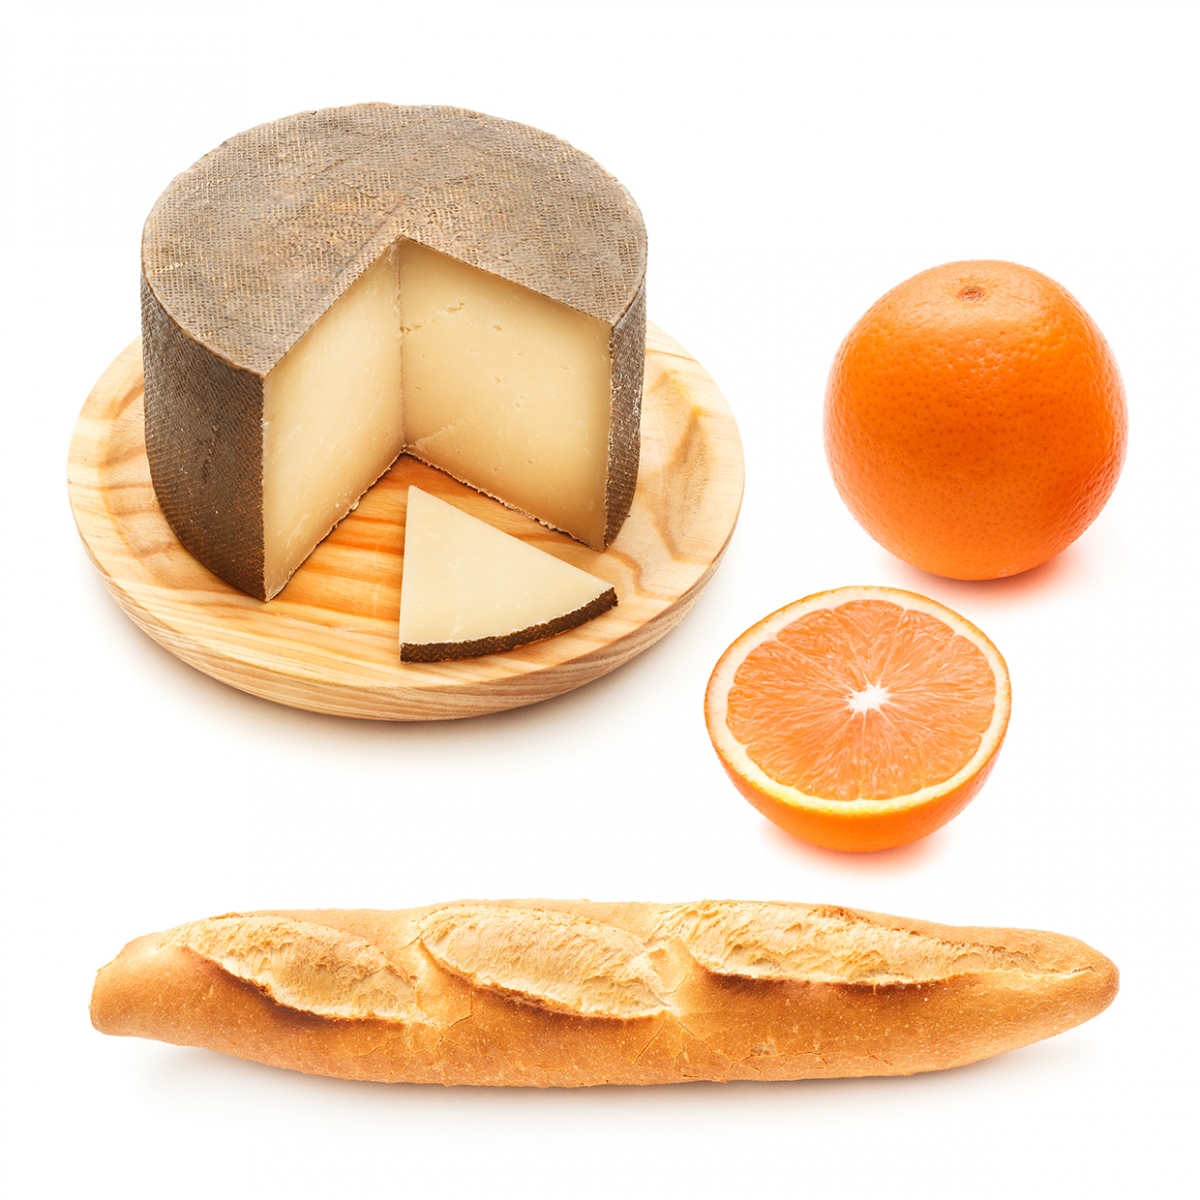 Imagen en la que se ve un queso, una barra de pan y una naranja